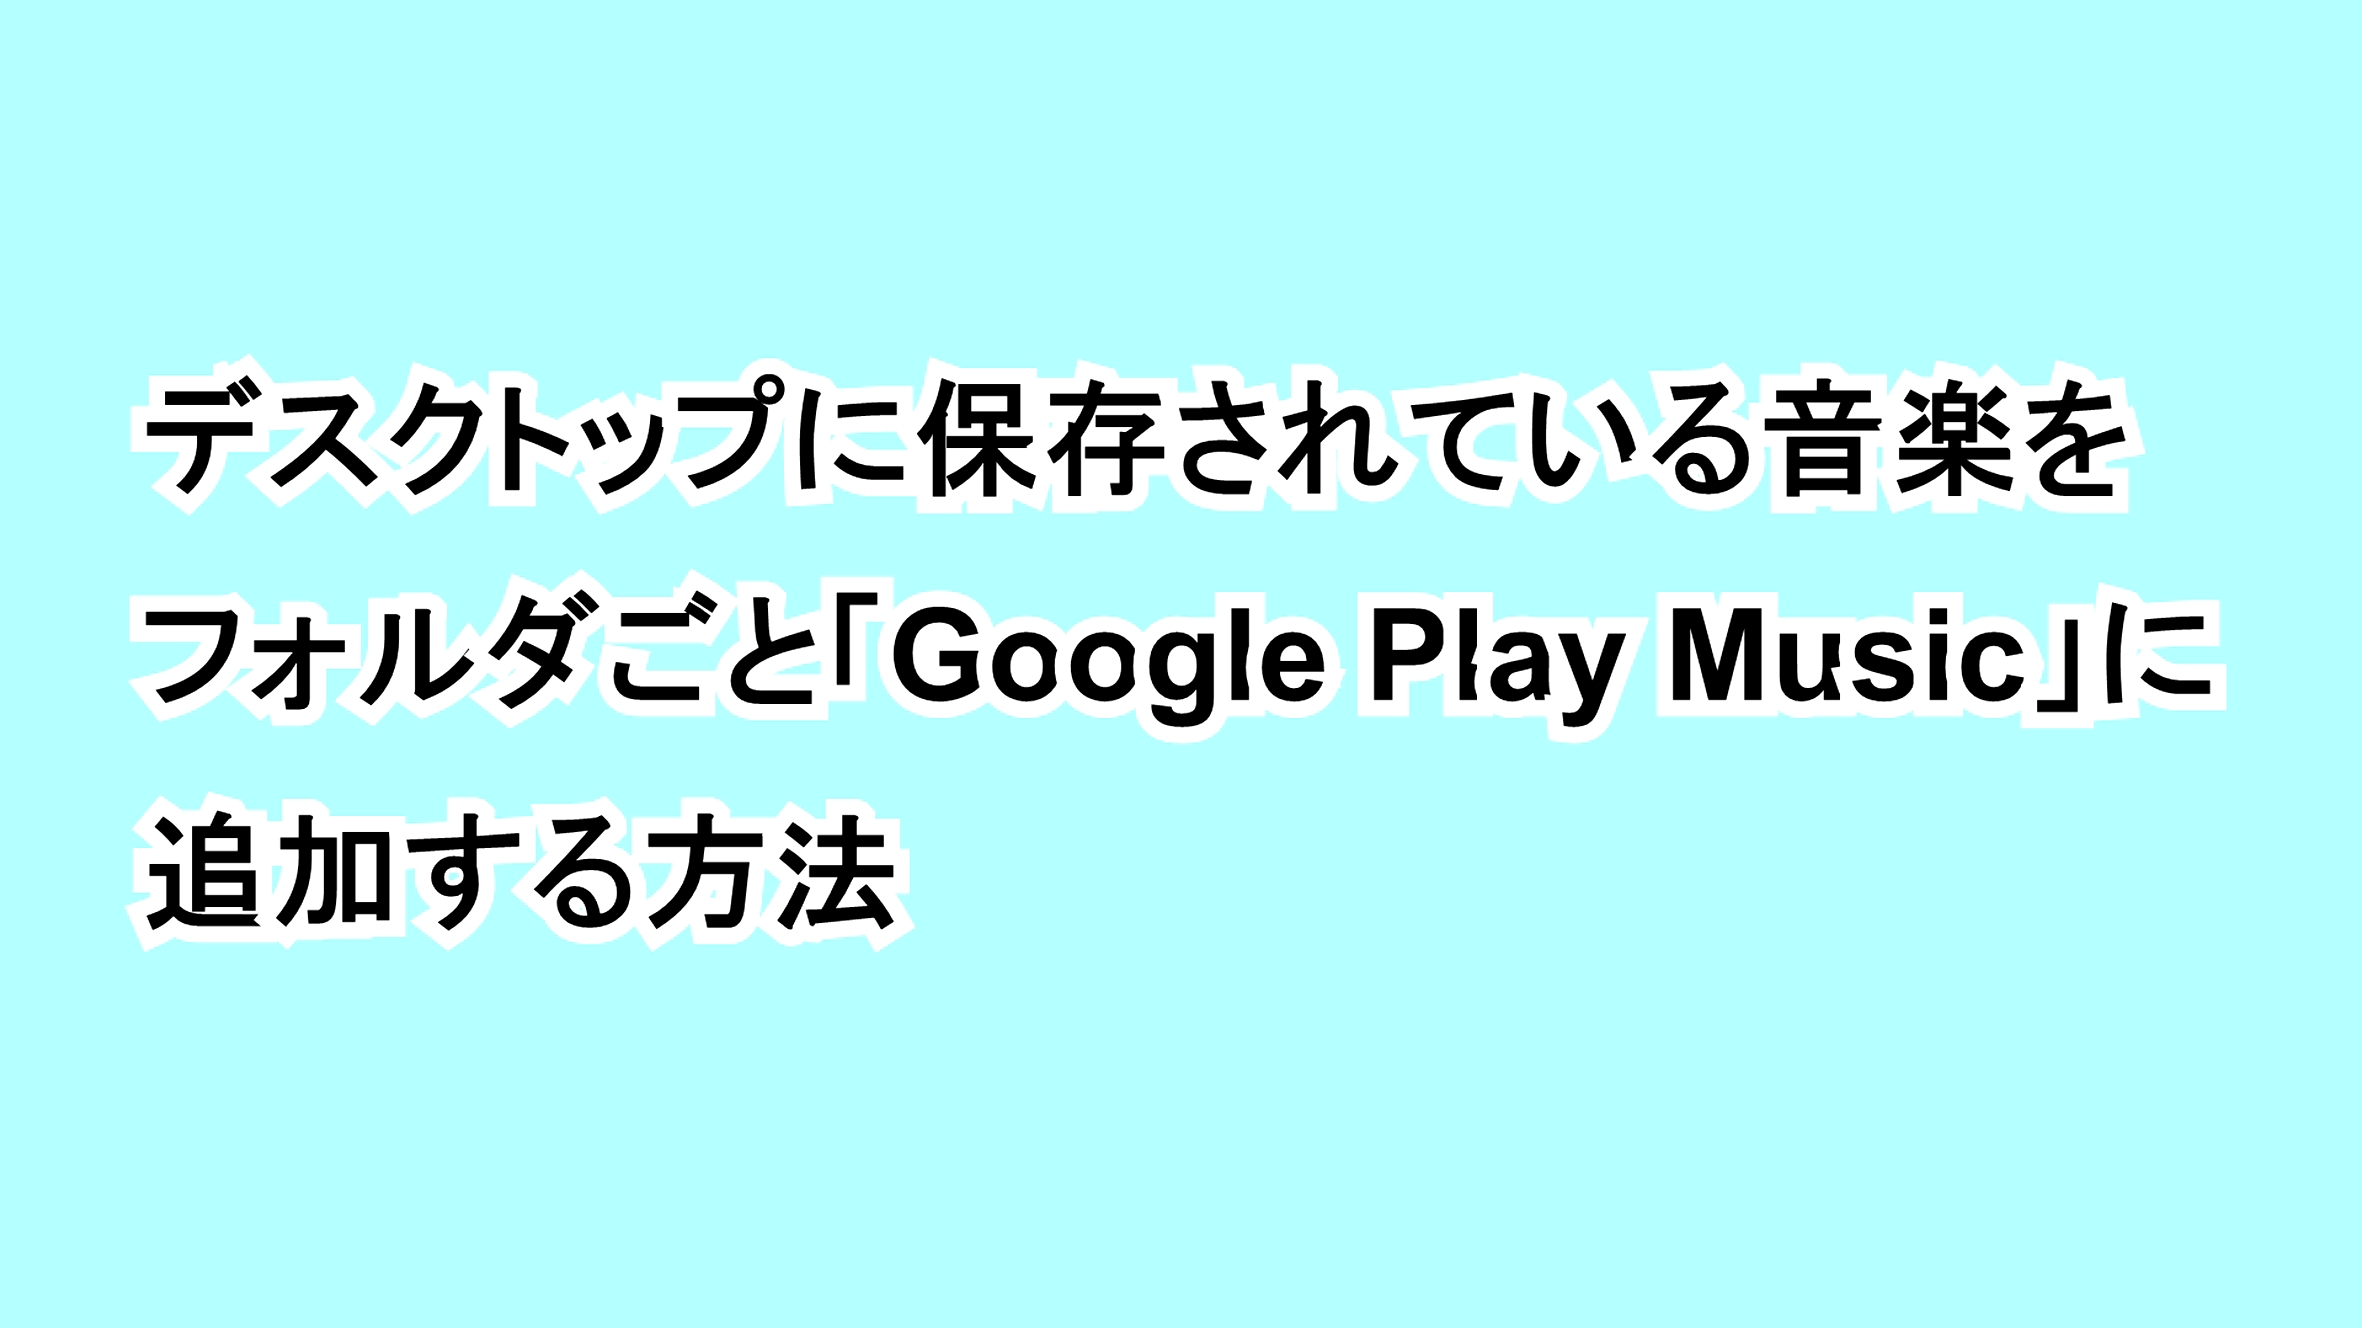 デスクトップに保存されている音楽をフォルダごと「Google Play Music」に追加する方法